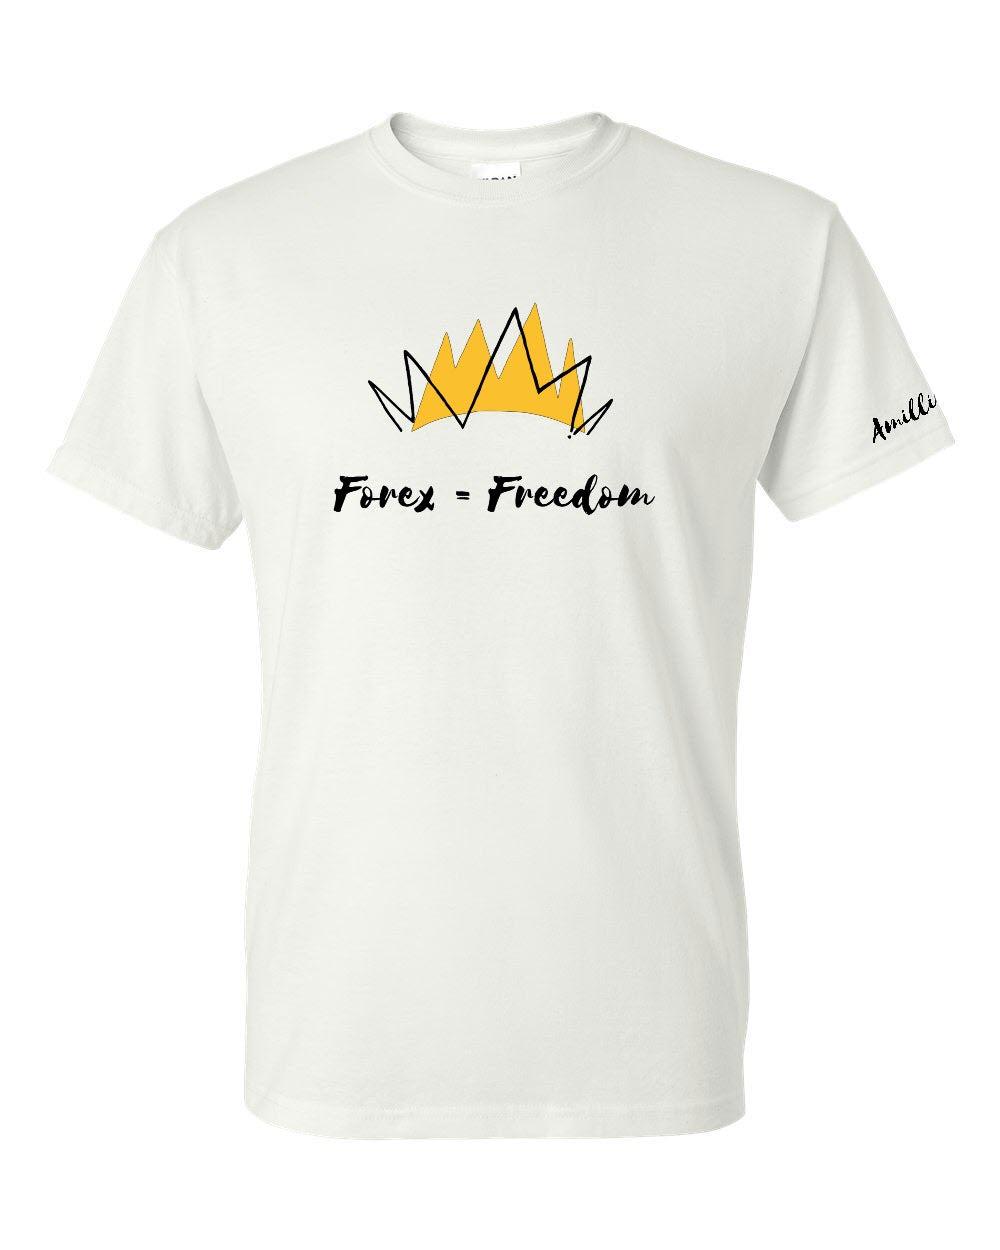 Forex = Freedom